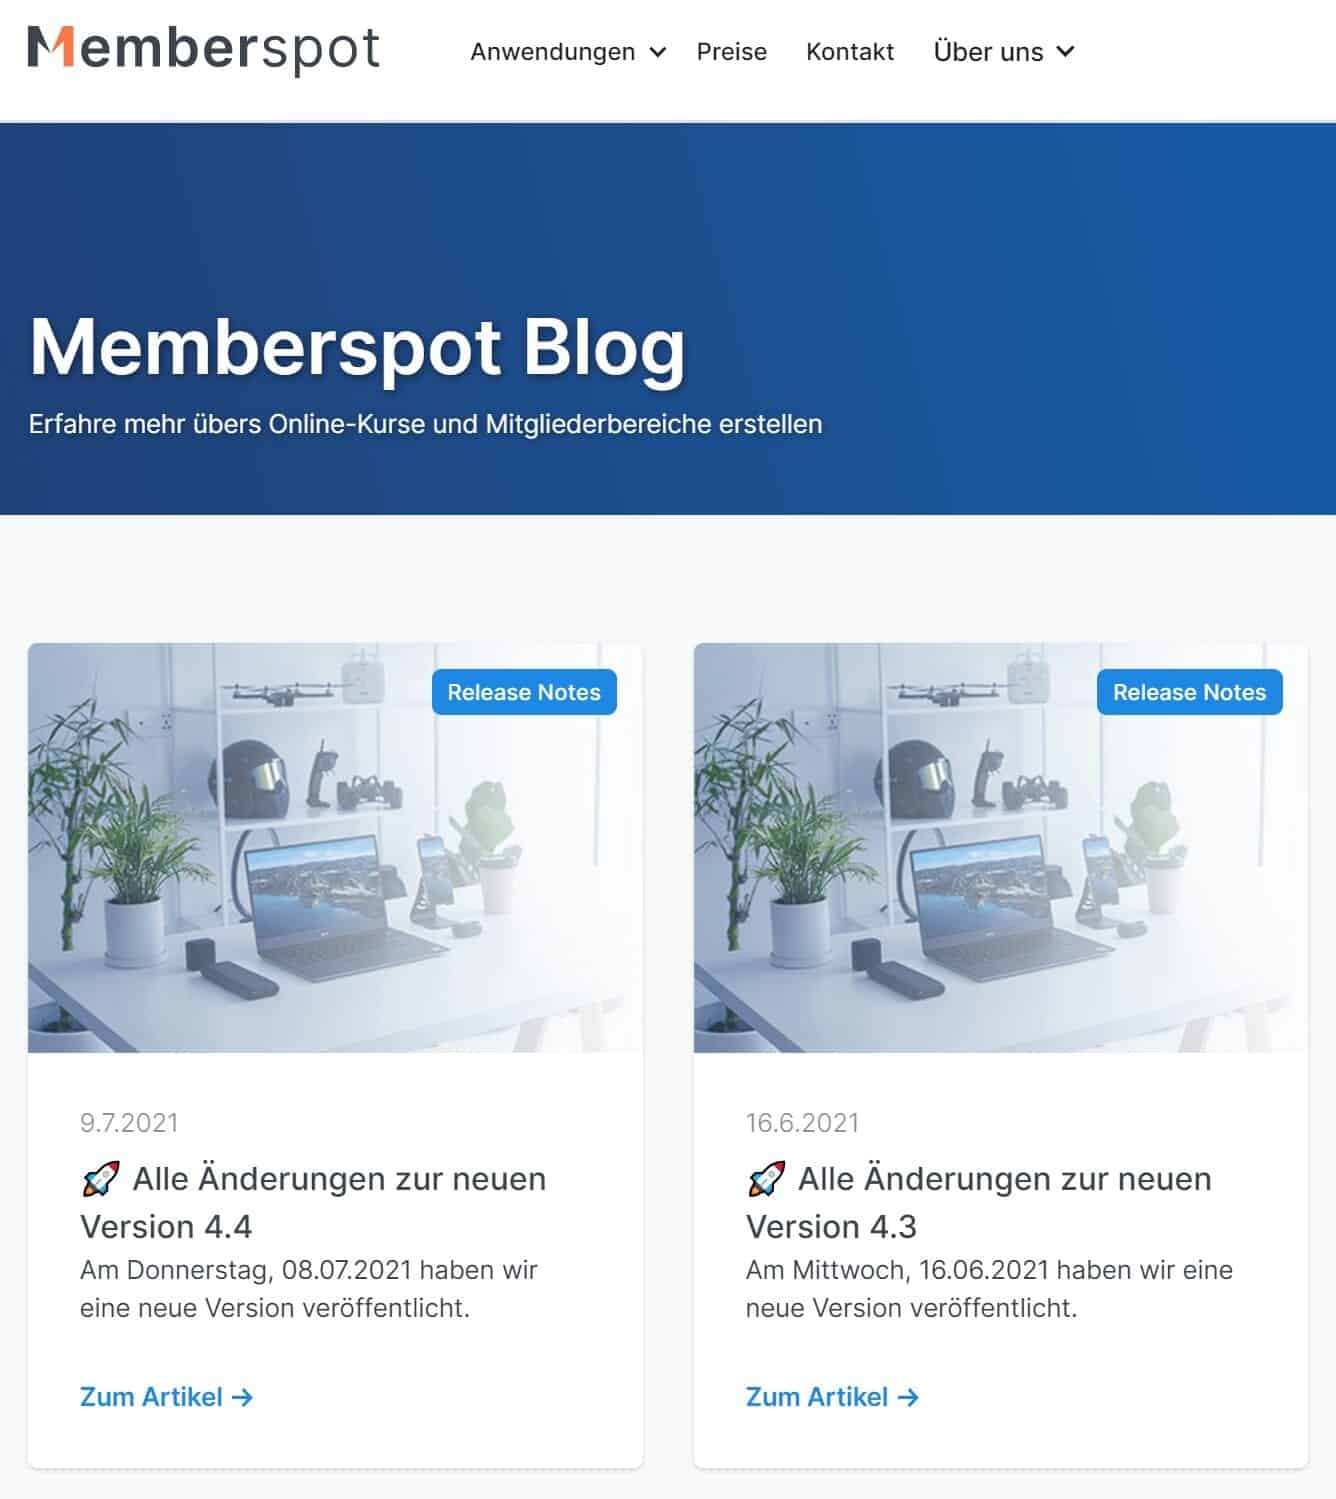 Memberspot Blog